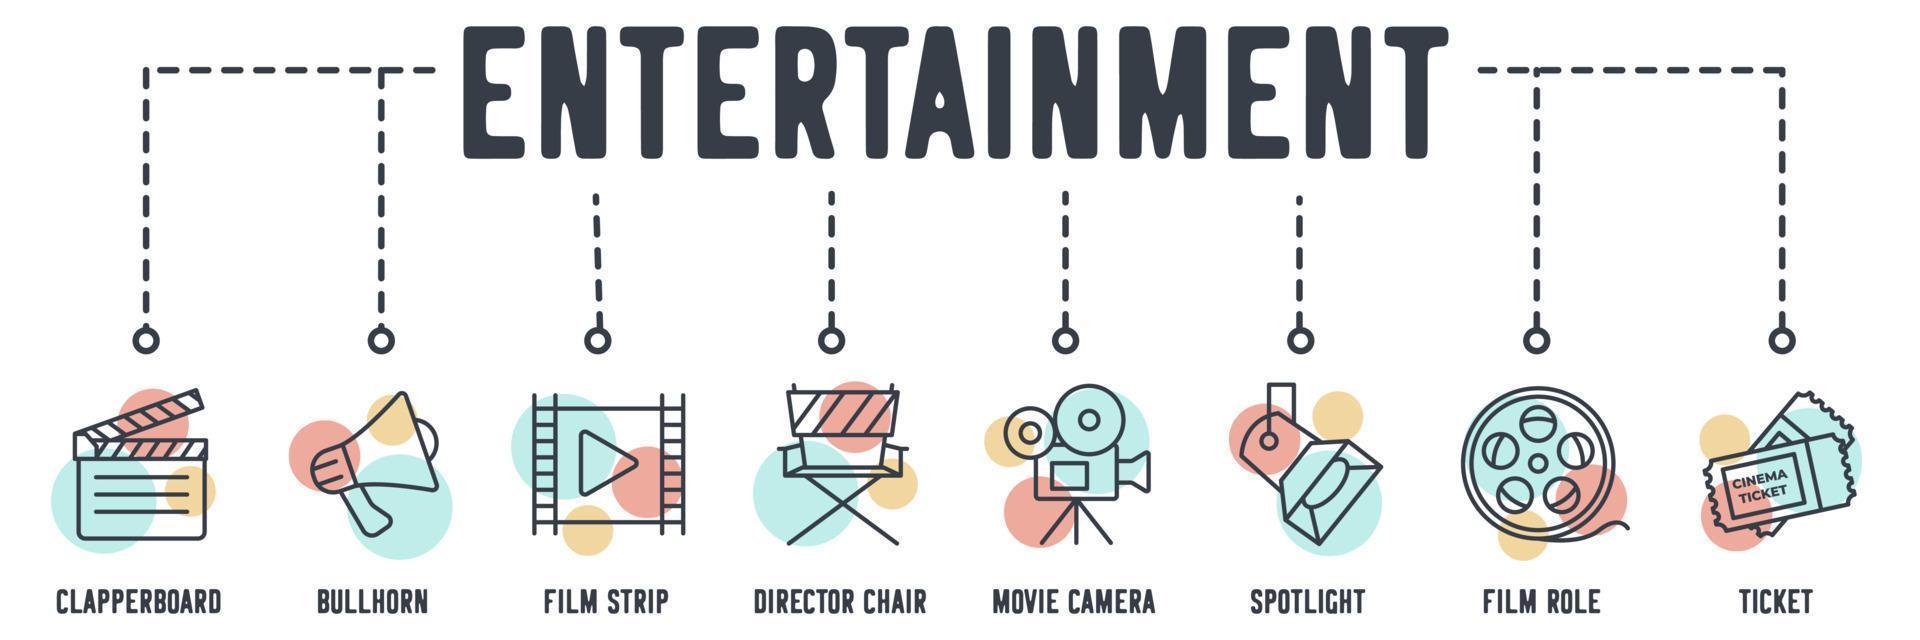 bioscoop entertainment banner web pictogram. Filmklapper, megafoon, filmstrip, regisseursstoel, filmcamera, spotlight, filmrol, ticket vector illustratie concept.